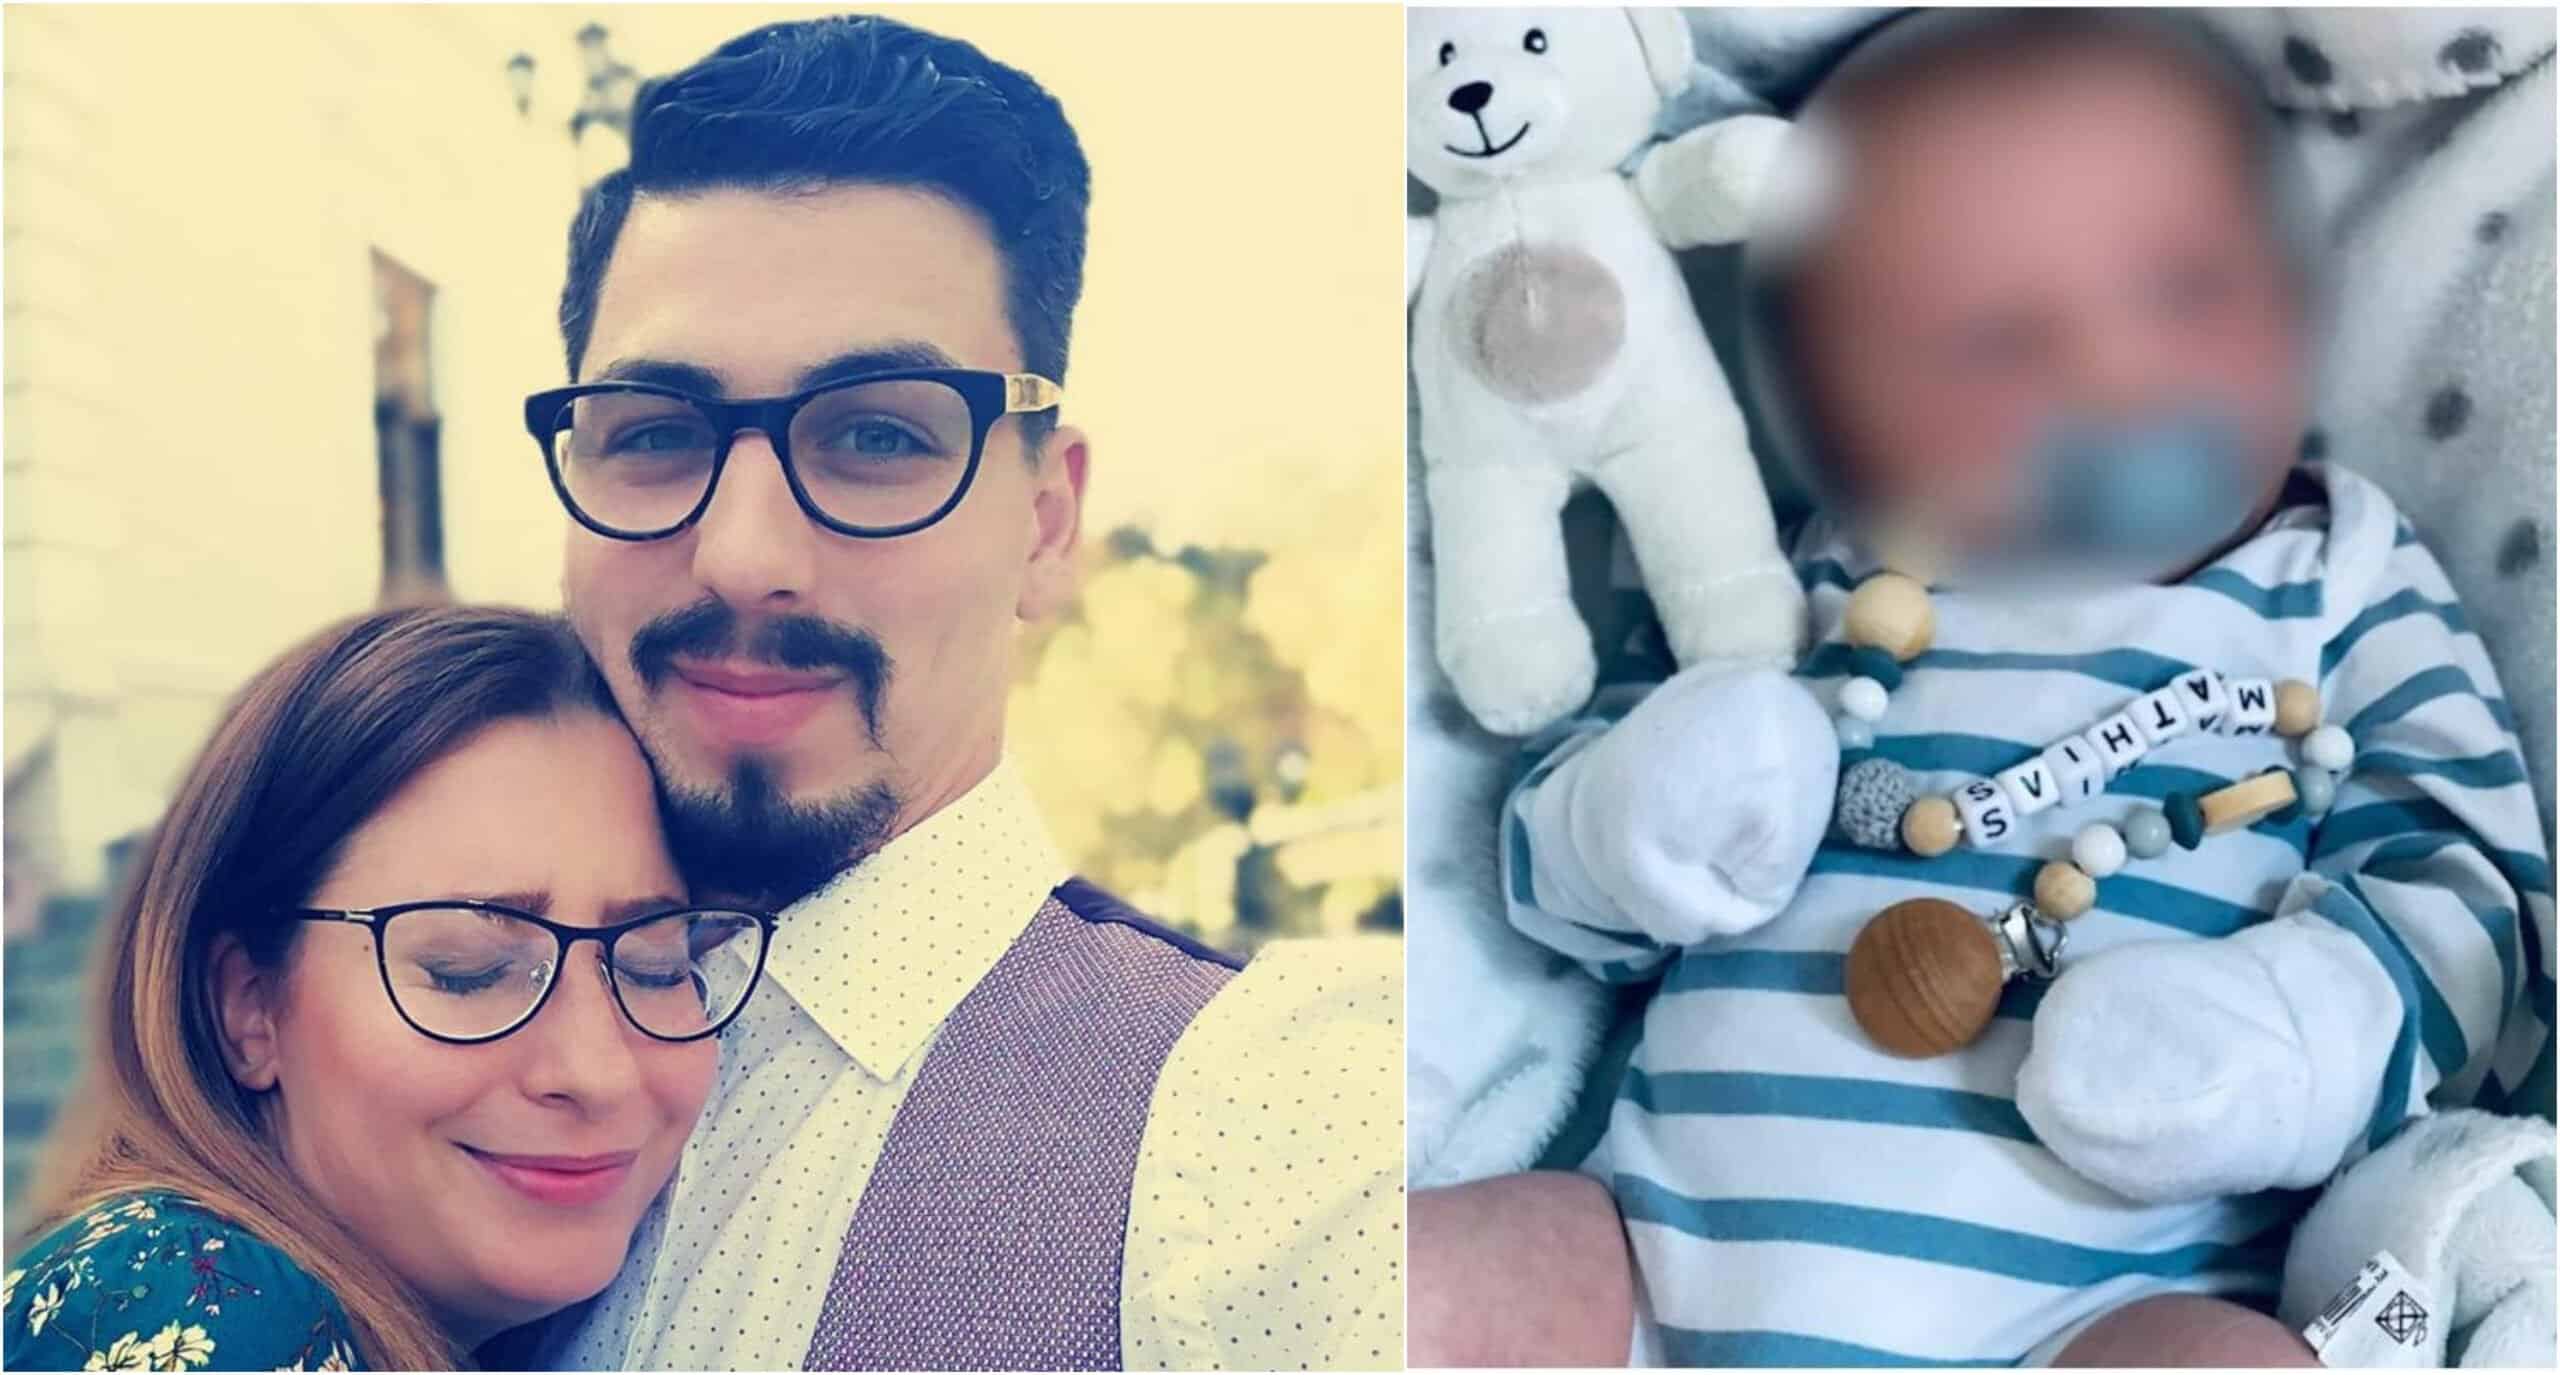 Bebelușul soților Rotundu, românii arestați în Danemarca, a fost dat în plasament pentru un an. Părinții nu pot cunoaște familia | Demamici.ro